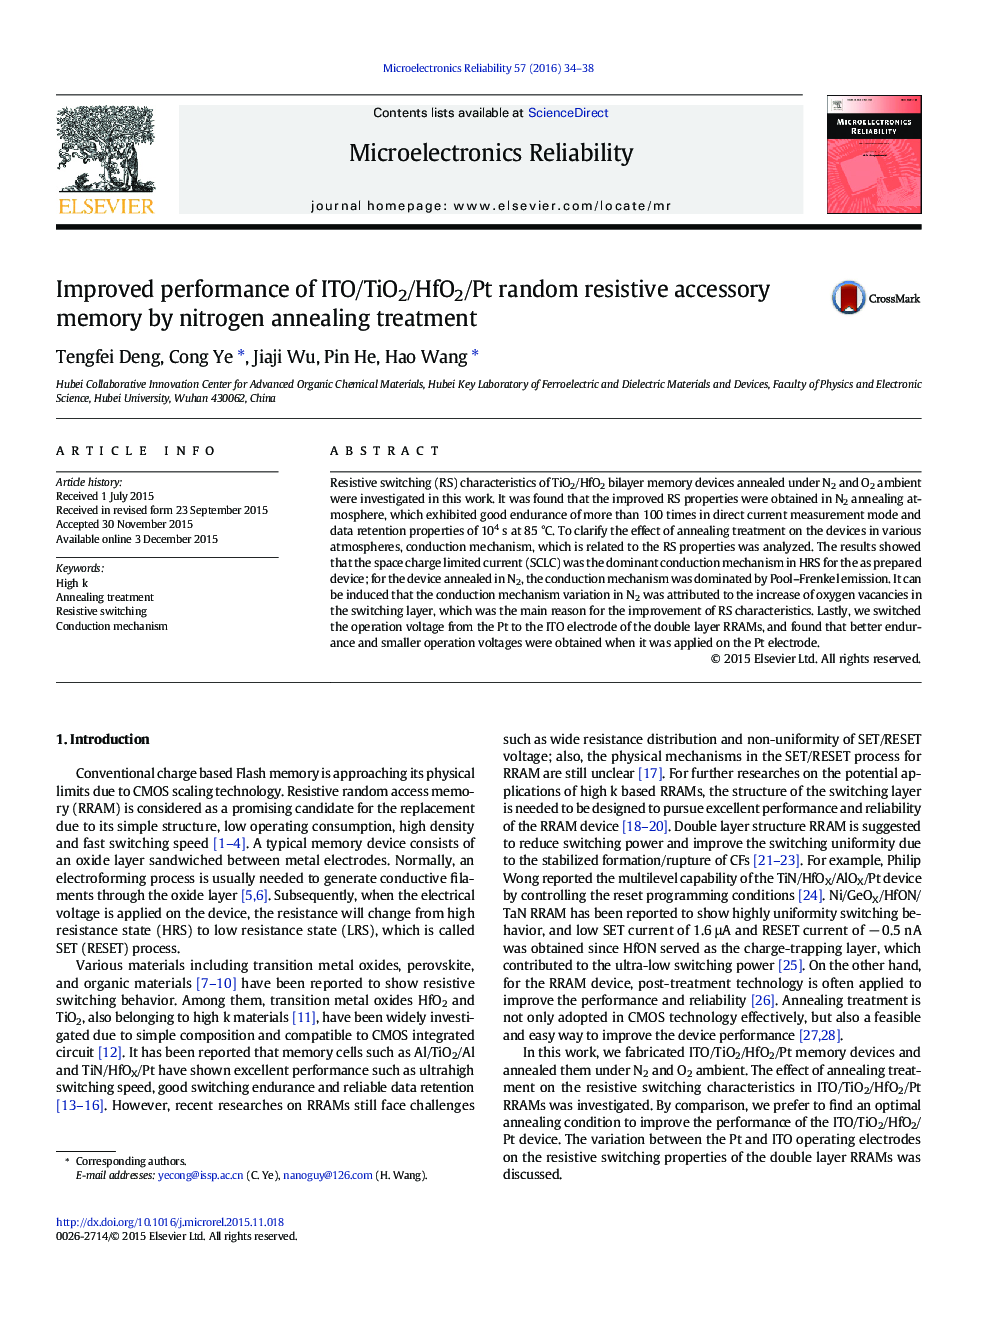 عملکرد بهبود یافته حافظه جانبی مقاومتی اتفاقی  ITO/ TiO2 / HfO2 / Pt با استفاده از درمان نیتروژن آنیل